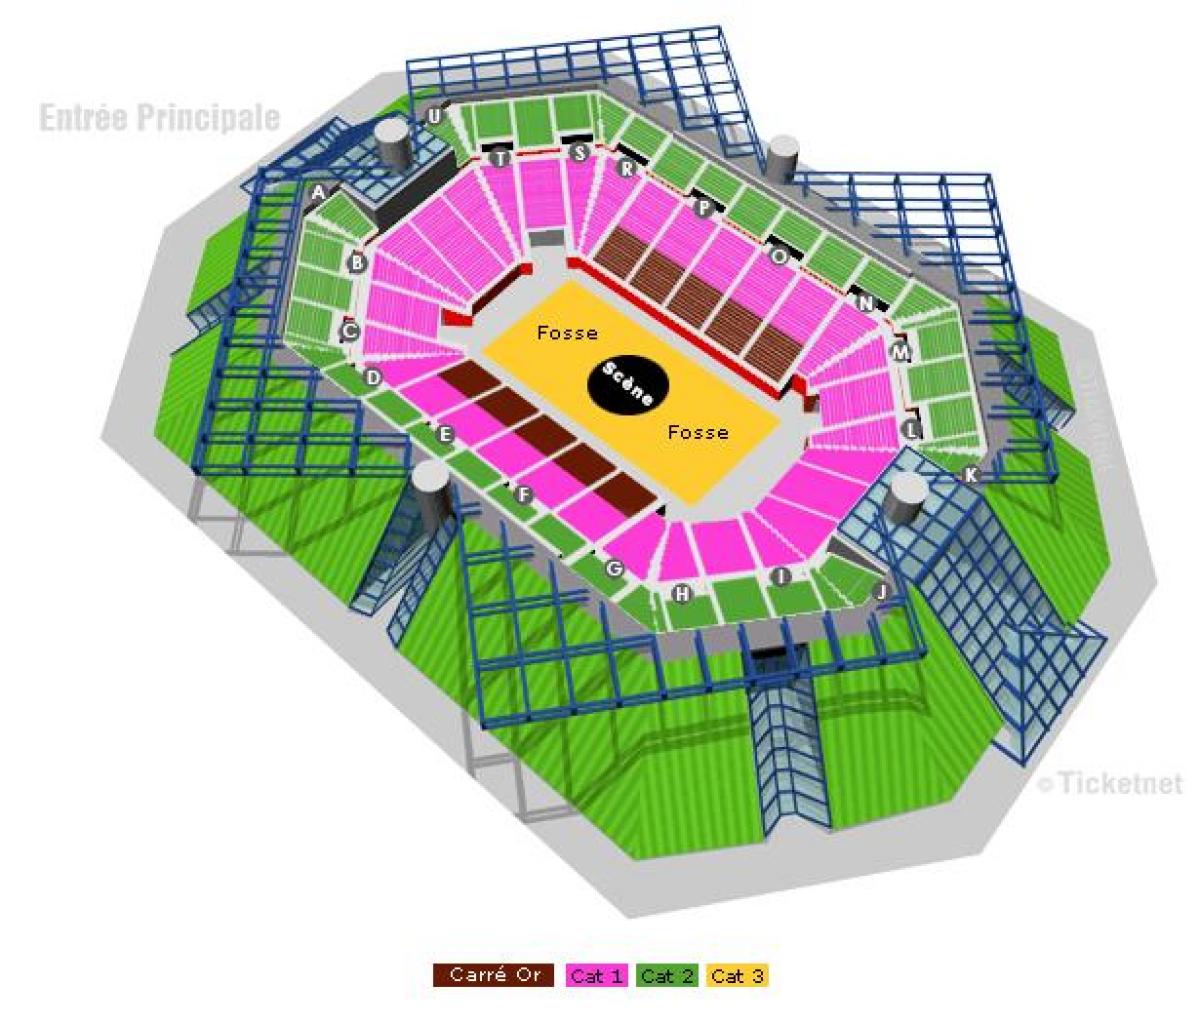 Zemljevid Bercy Arena